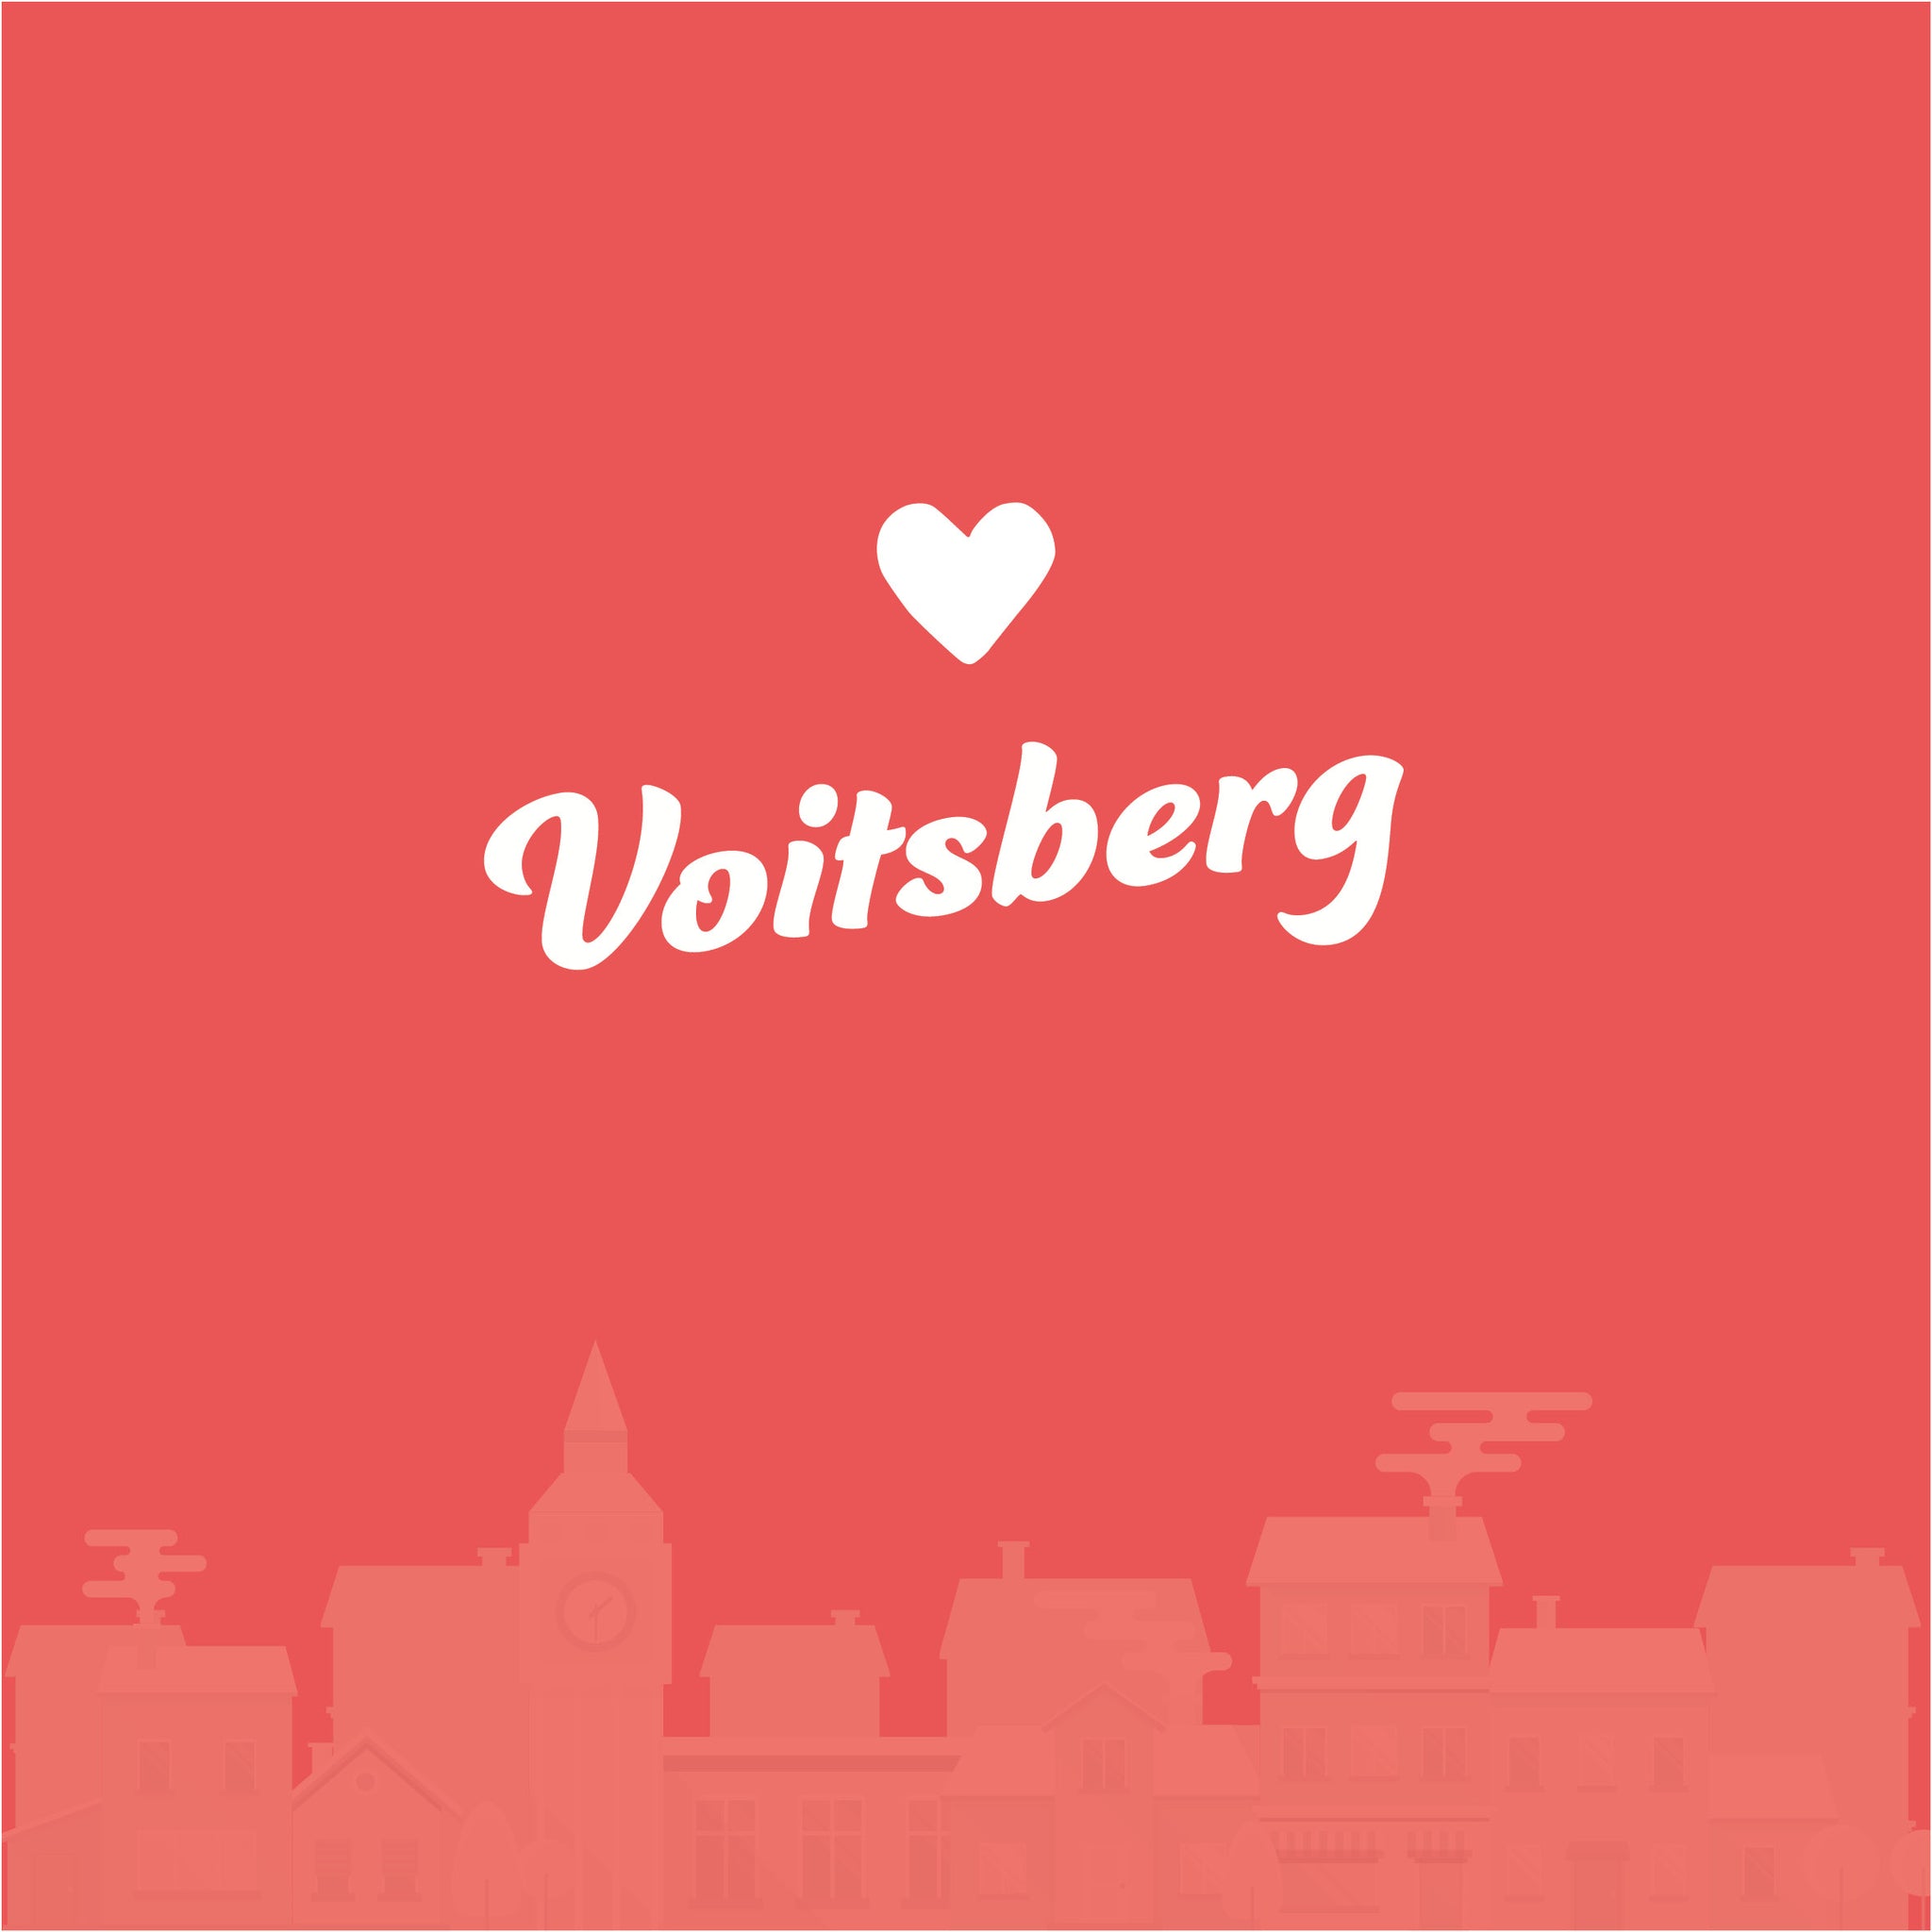 Voitsberg